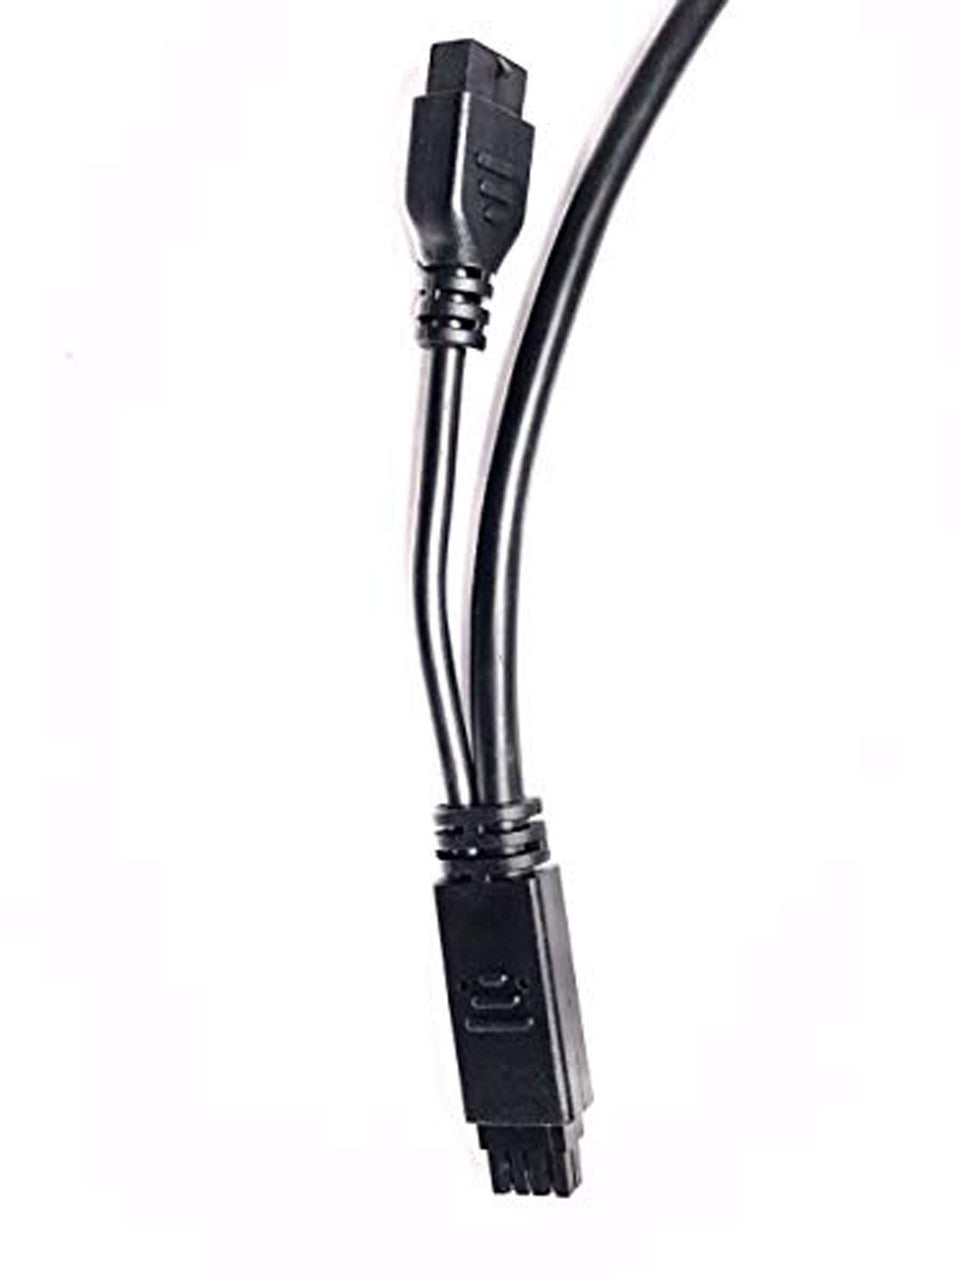 Sierra Wireless MP70 OBD-II Y Cable - 6001204